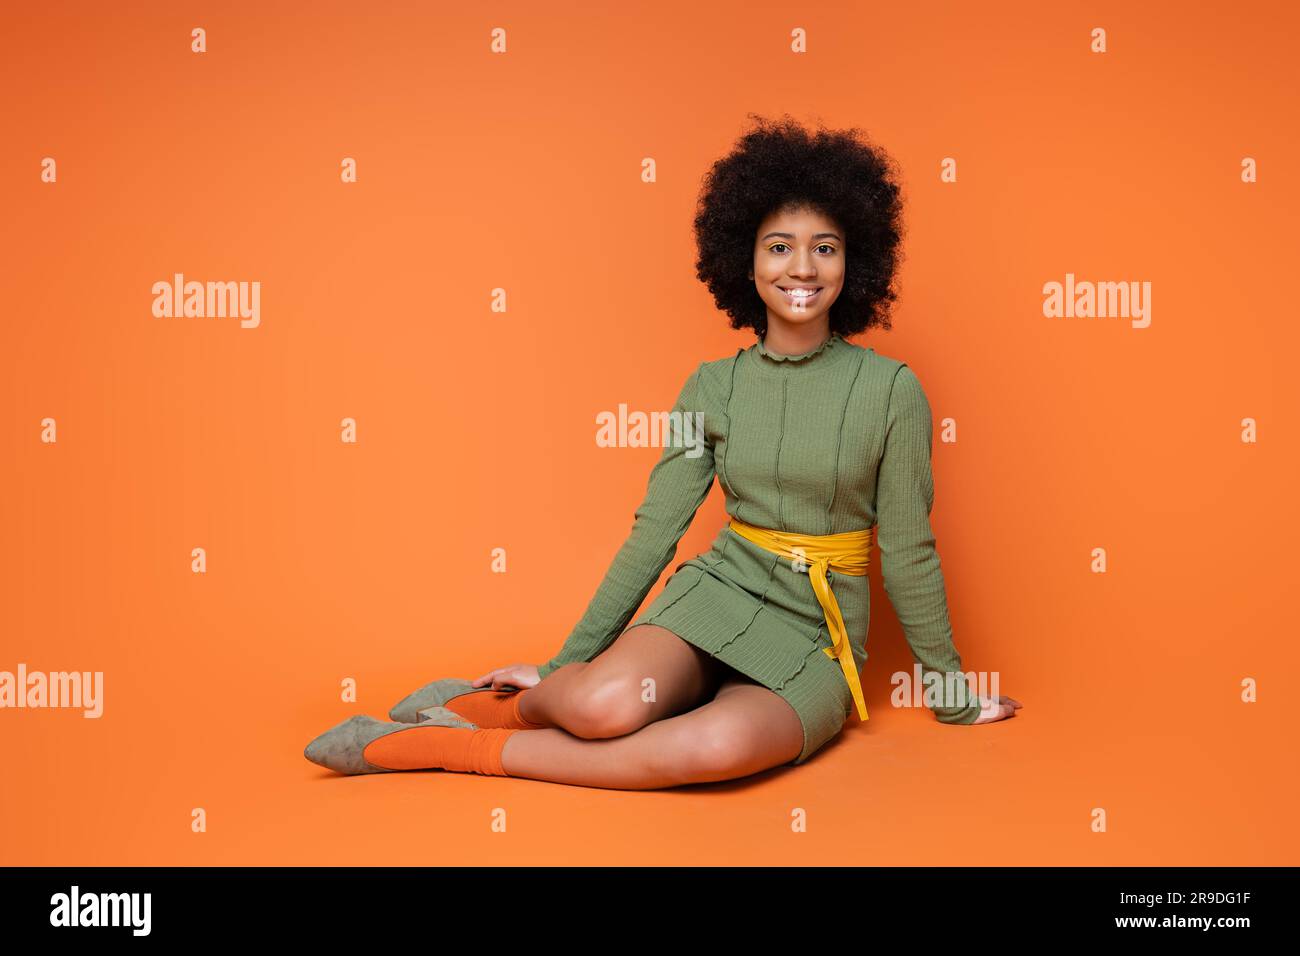 Allegra e adolescente ragazza afroamericana in elegante abito verde sorridente davanti alla macchina fotografica mentre si siede e posa su sfondo arancione, cultura giovanile e.. Foto Stock